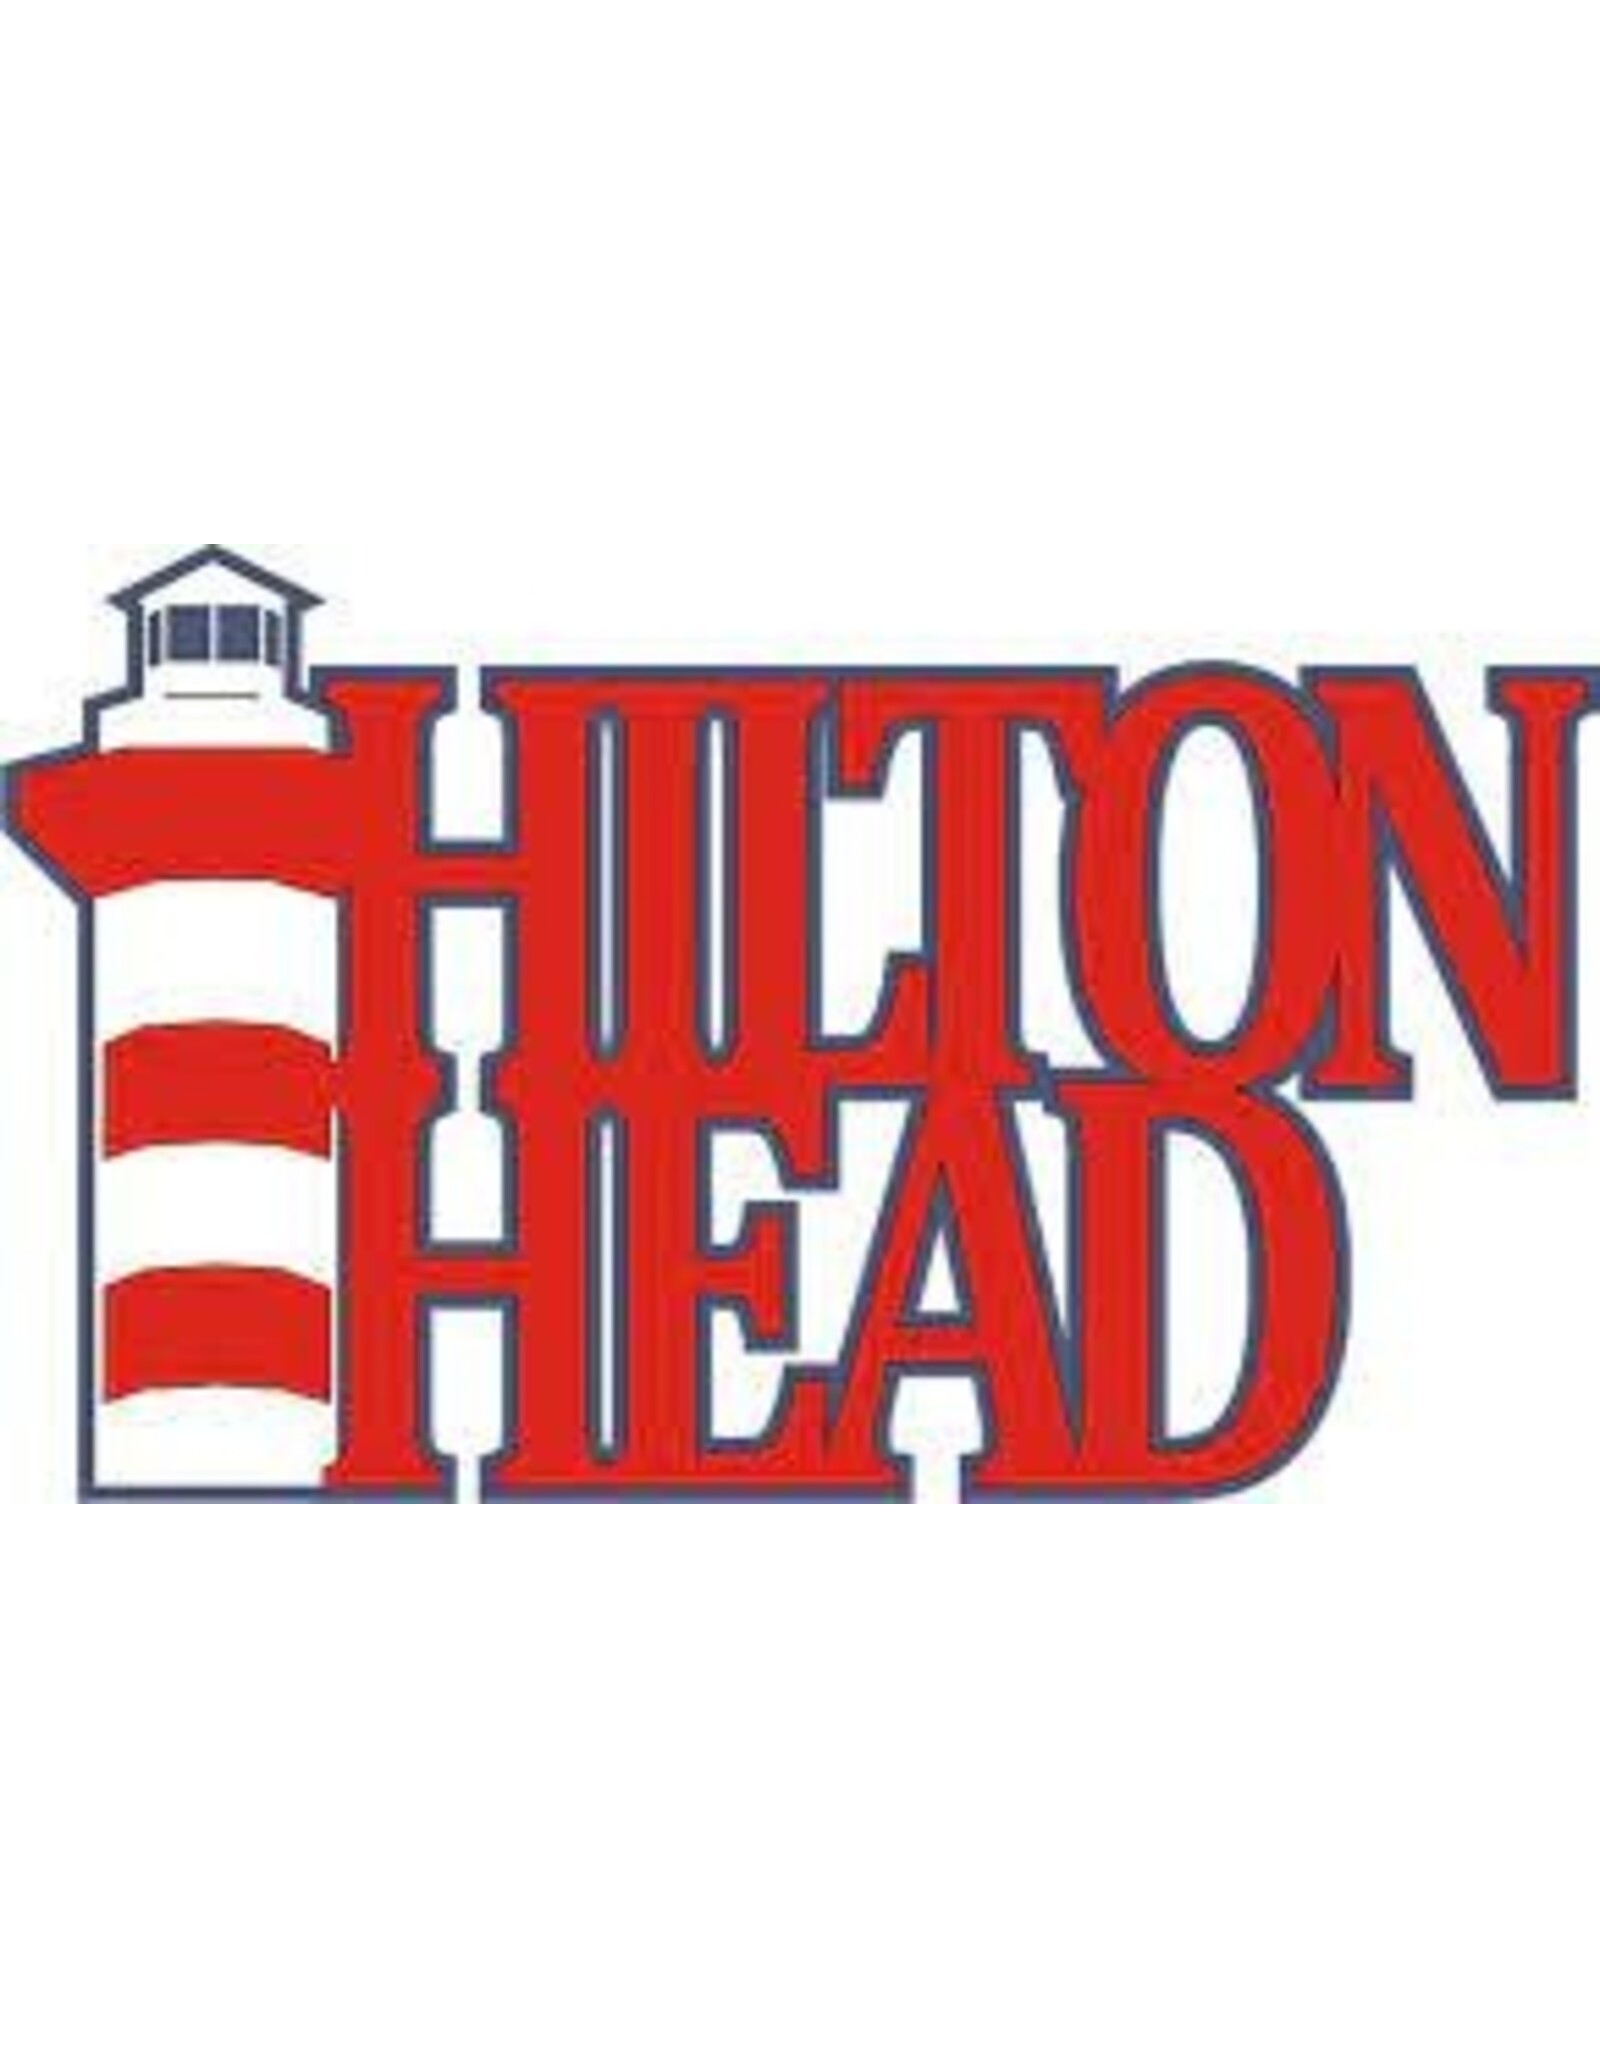 Hilton Head NC Banner